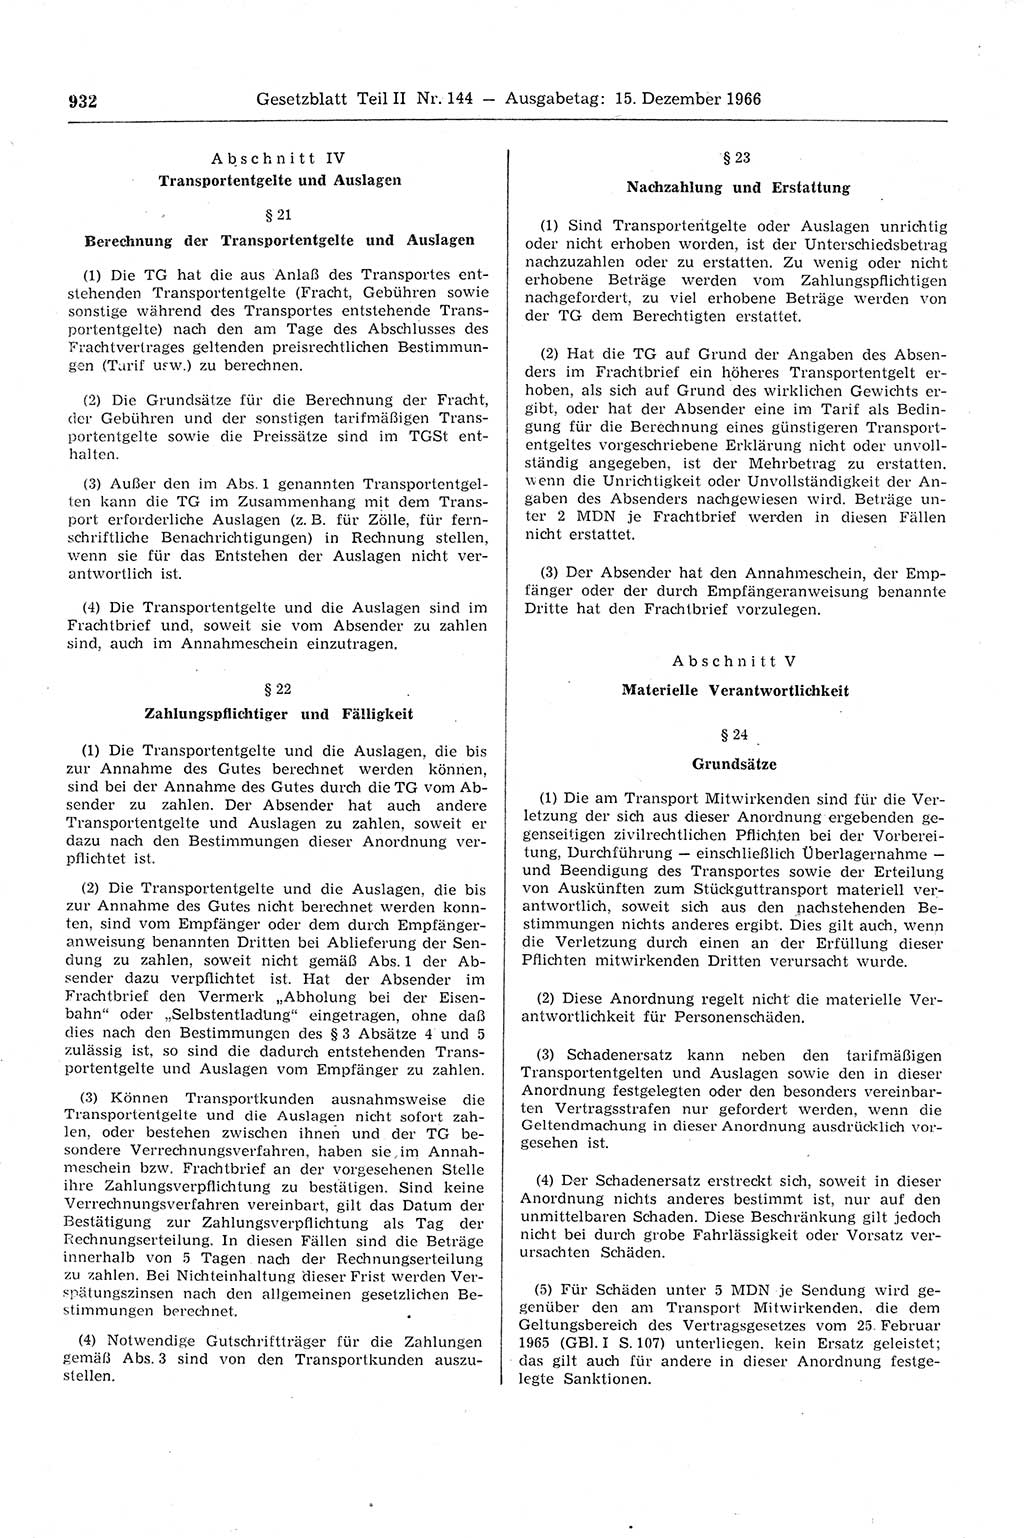 Gesetzblatt (GBl.) der Deutschen Demokratischen Republik (DDR) Teil ⅠⅠ 1966, Seite 932 (GBl. DDR ⅠⅠ 1966, S. 932)